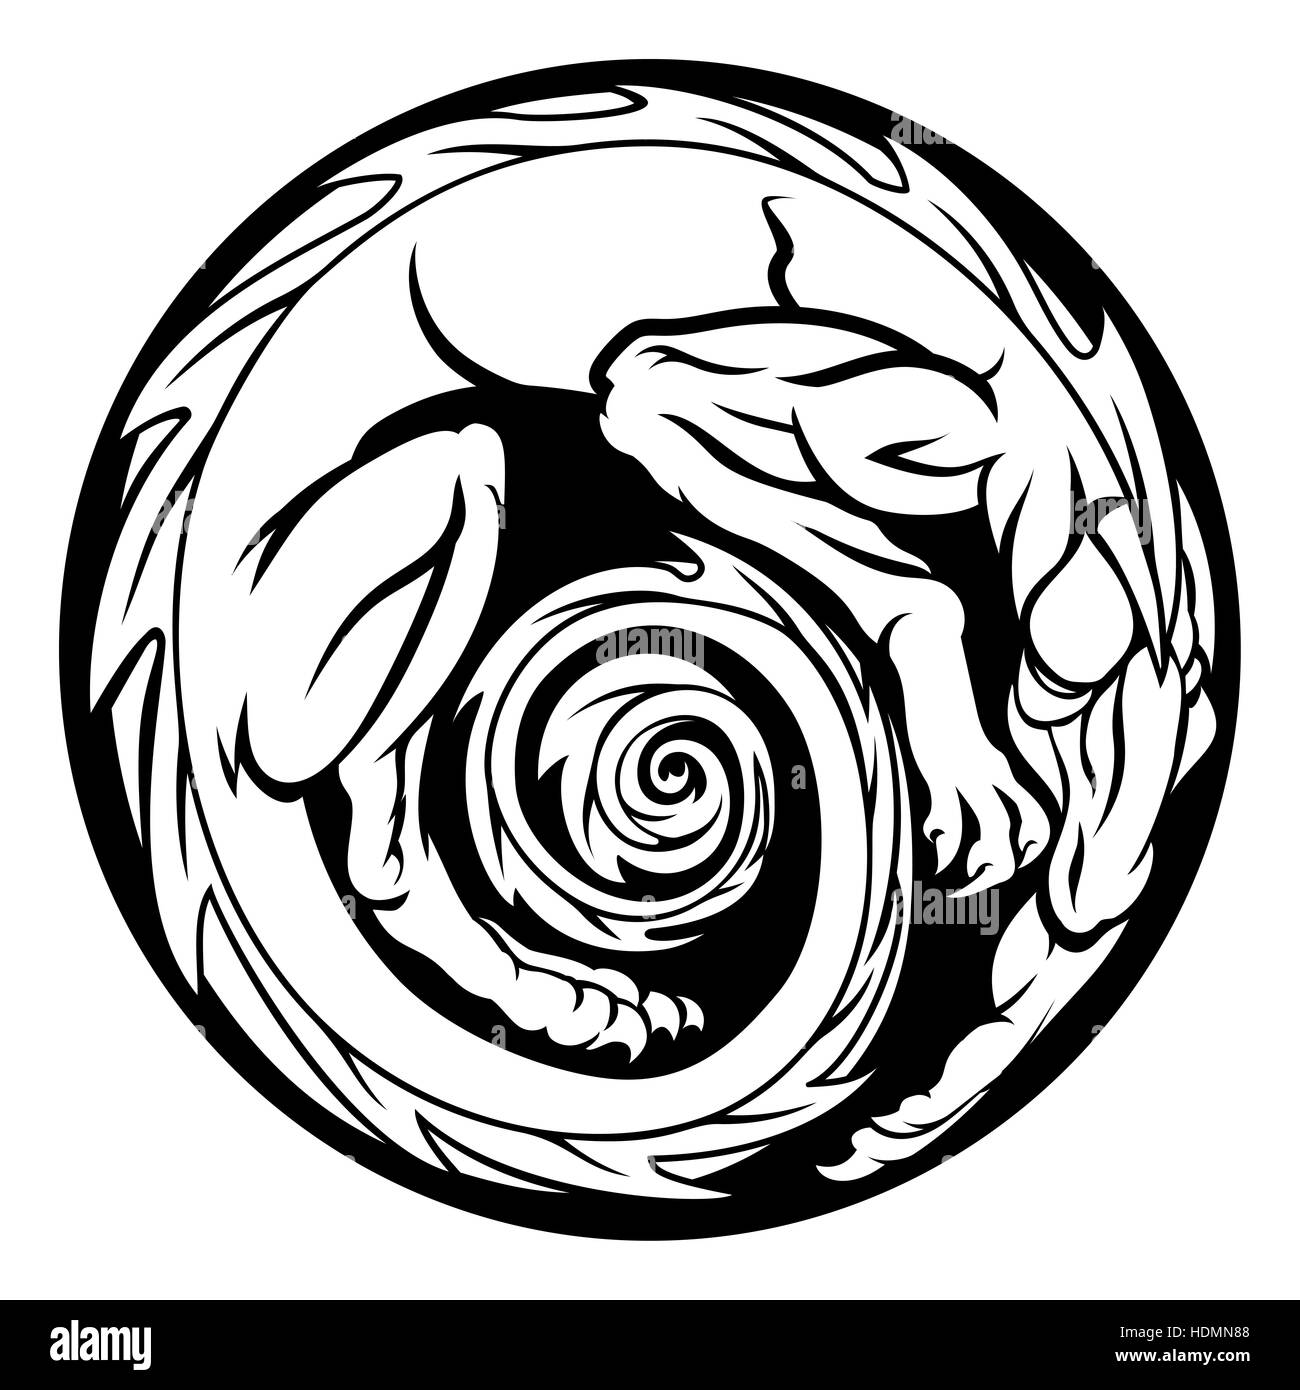 An abstract dragon in a circular circle design Stock Photo